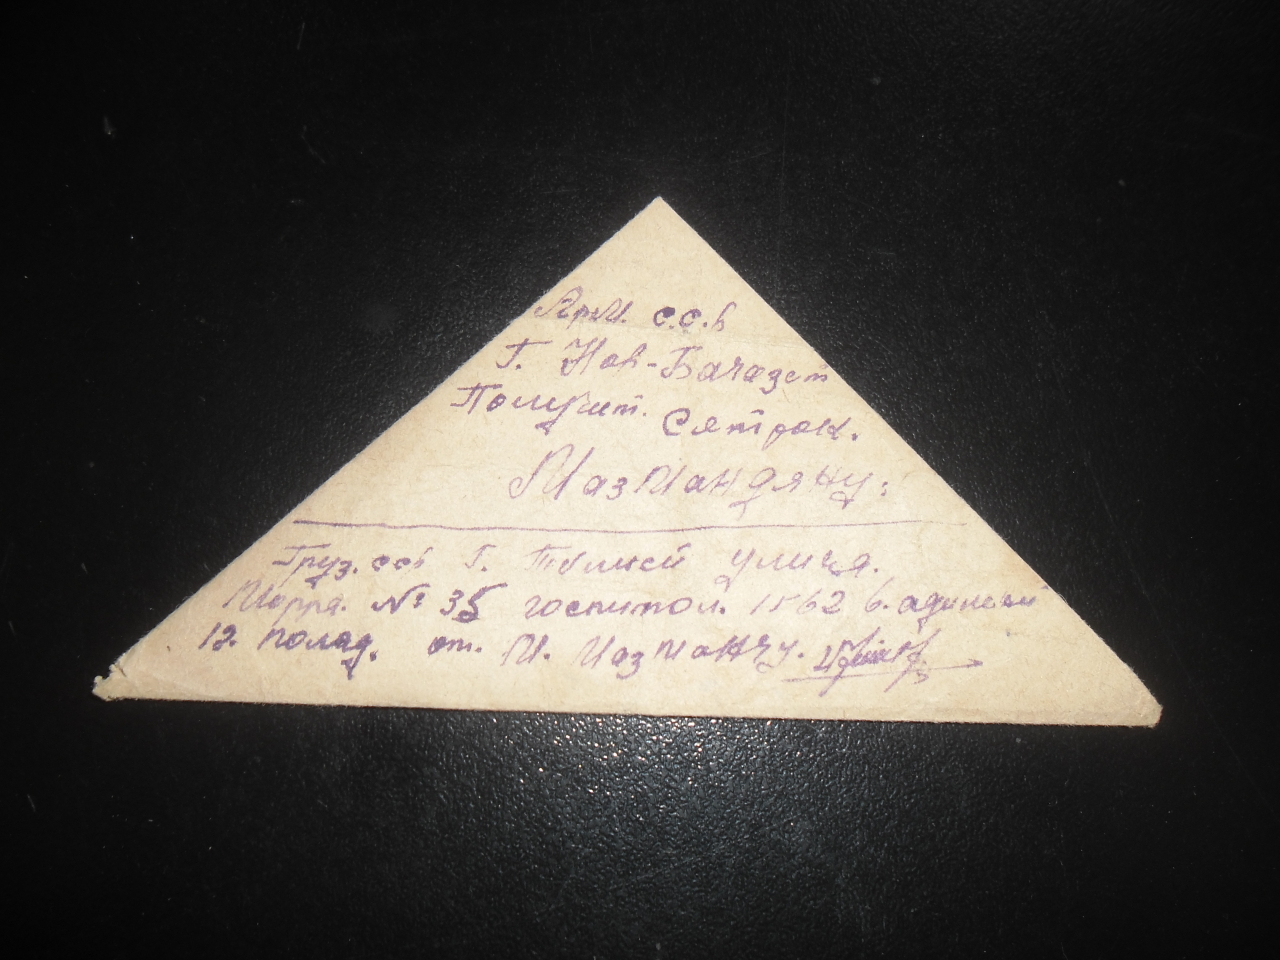 Նամակ՝ Միսակ Սեդրակի Մազմանյանից (Հայրենական պատերազմի մասնակից) հարազատներին